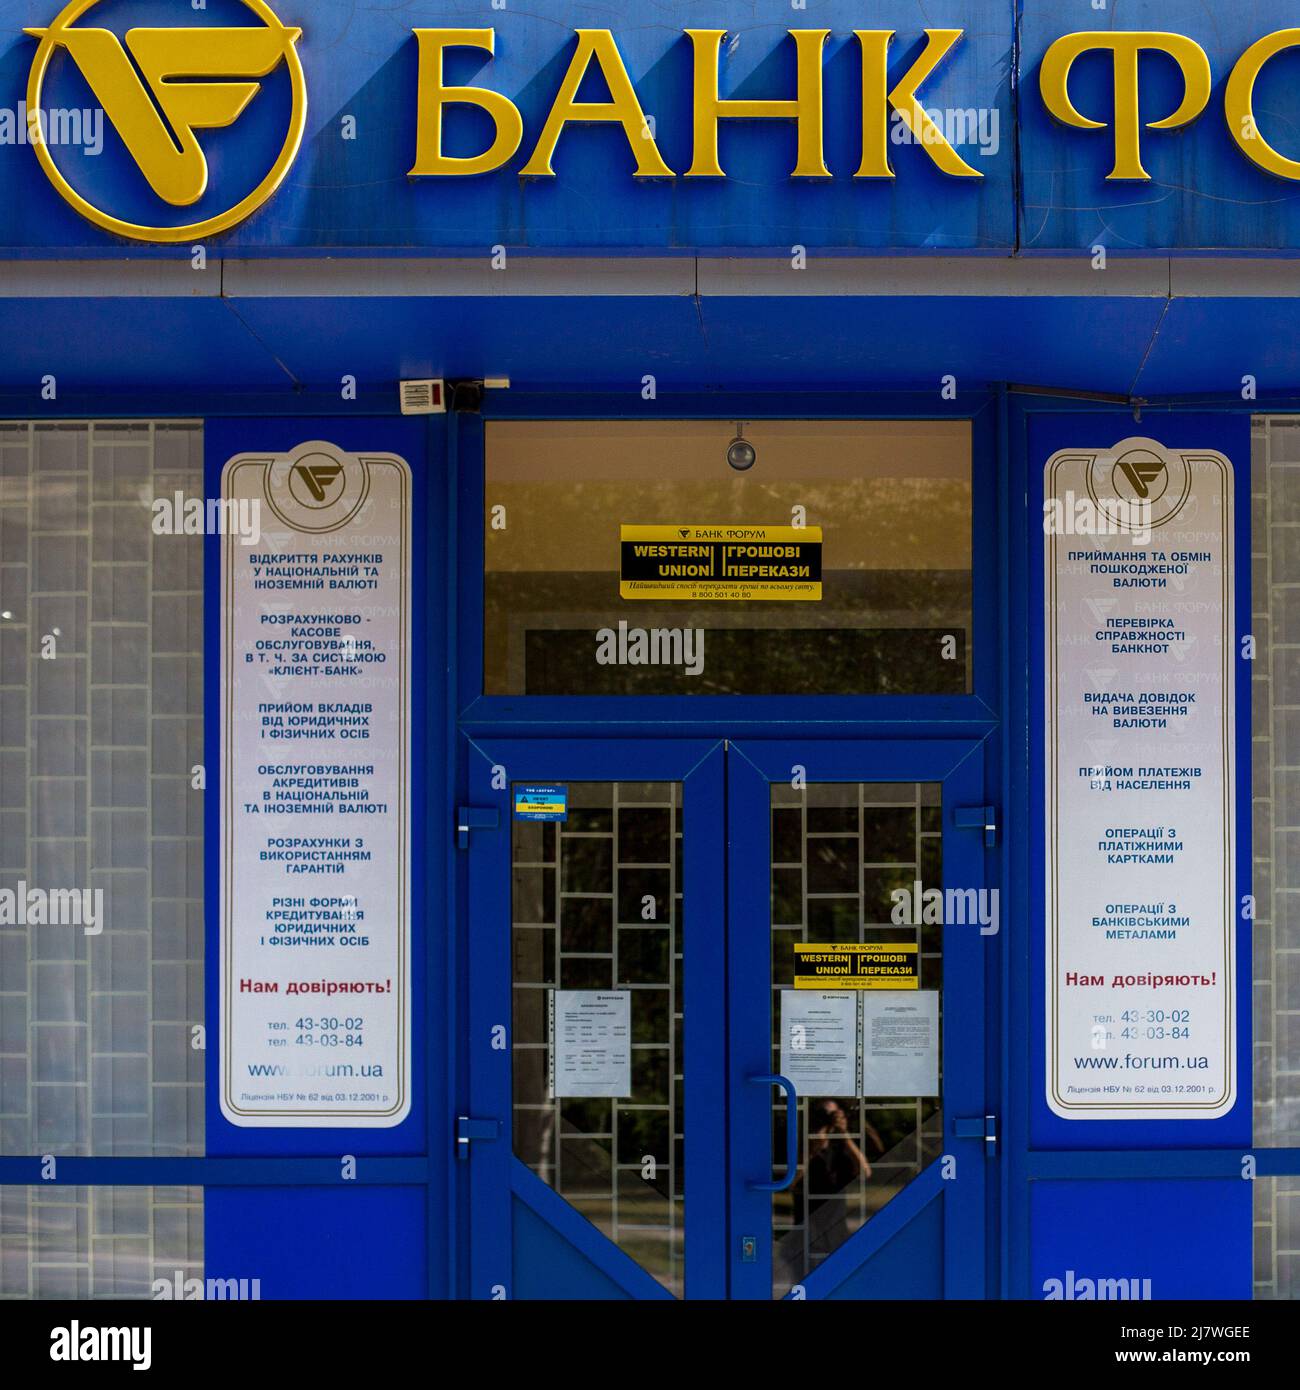 Michael Bunel / le Pictorium - i colori dell'Ucraina - 10/05/2014 - Ucraina / Donbass / Donetsk - fronte di una banca nei colori dell'Ucraina Foto Stock